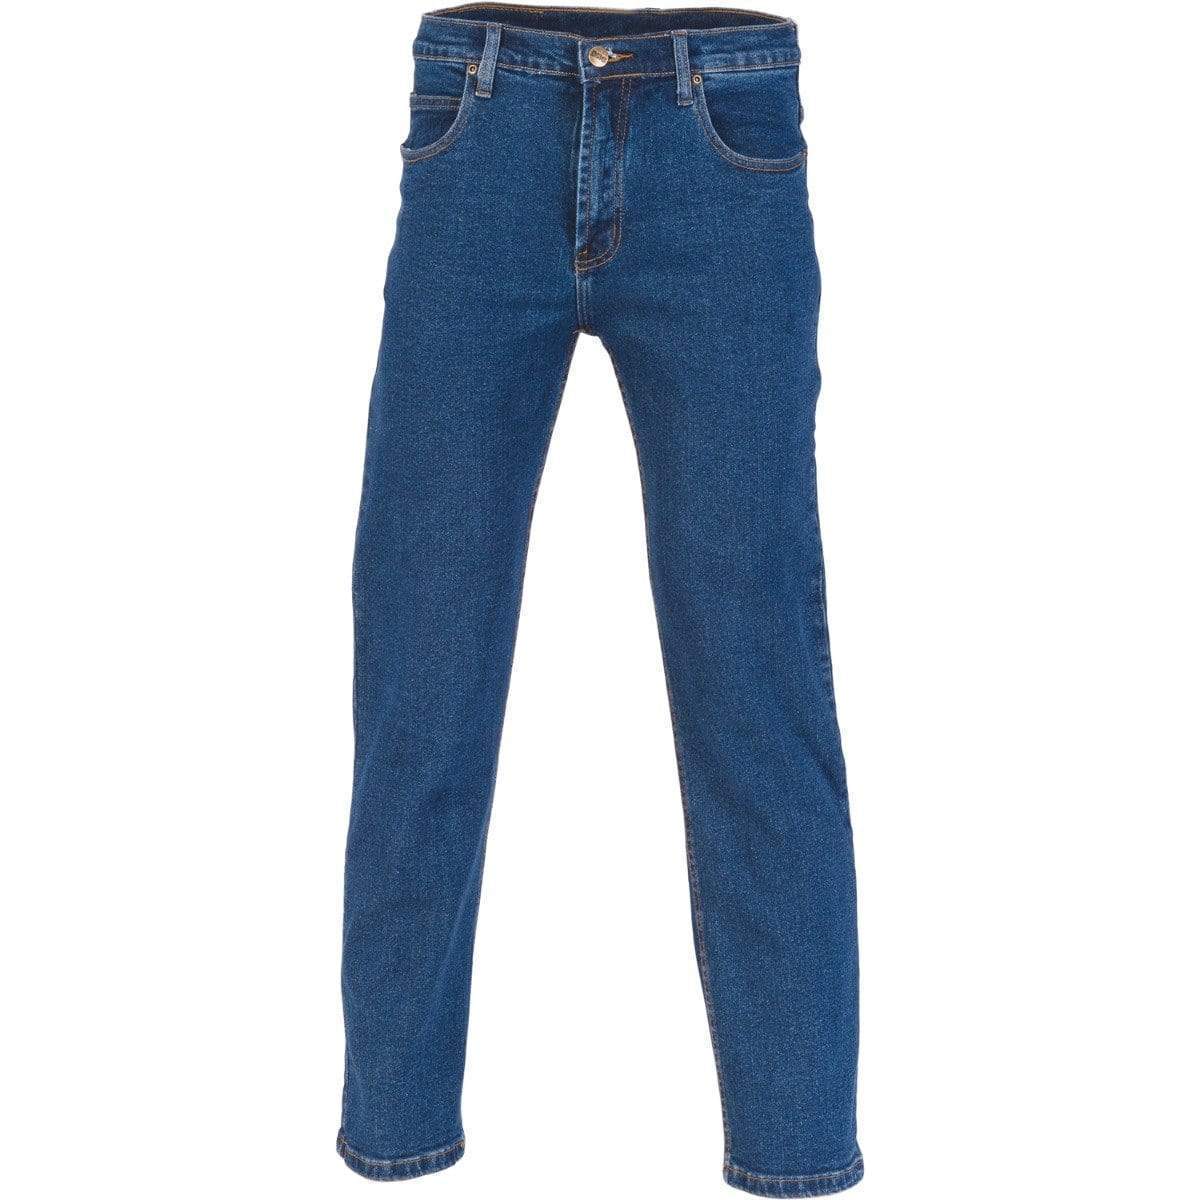 DNC Workwear Work Wear DNC WORKWEAR Denim Stretch Jeans 3318